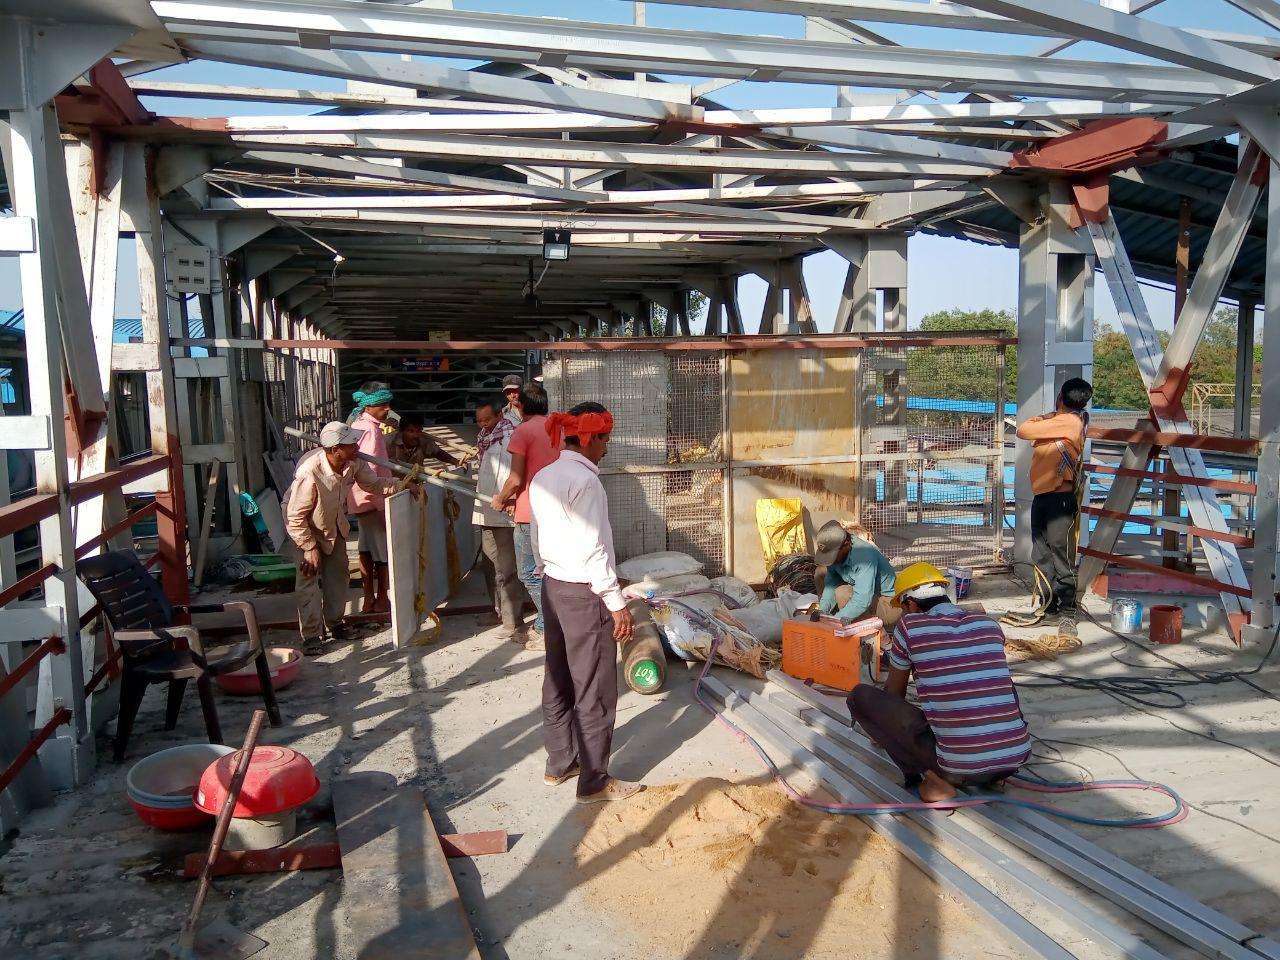 PHOTO GALLERY: देखिये क्या काम चल रहा बिलासपुर रेलवे स्टेशन में, इस तरह से
यात्रियों को होगा लाभ